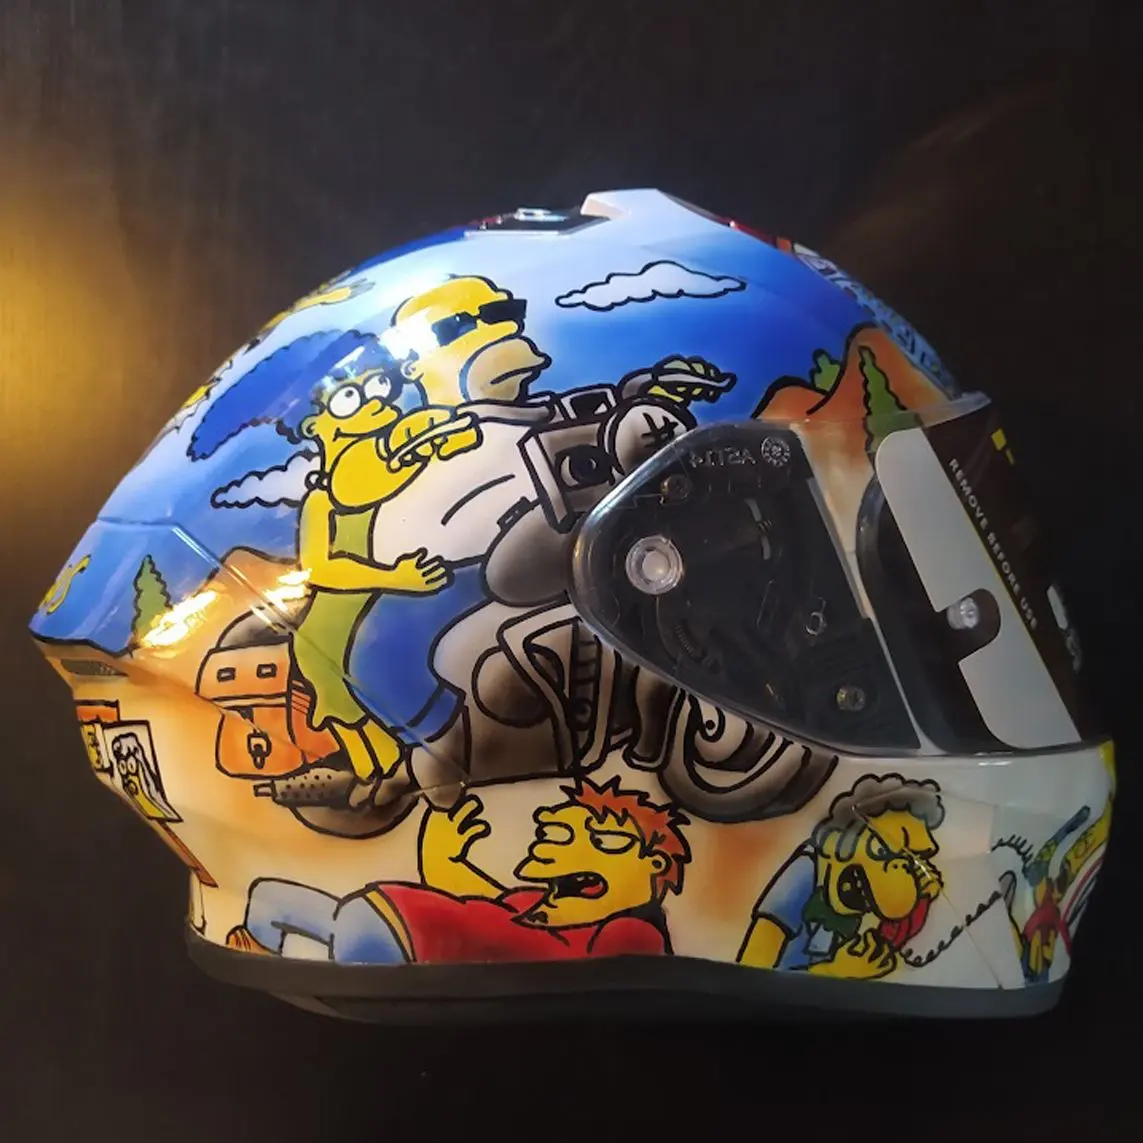 personalizar casco moto - Cómo se debe poner el casco un conductor de moto